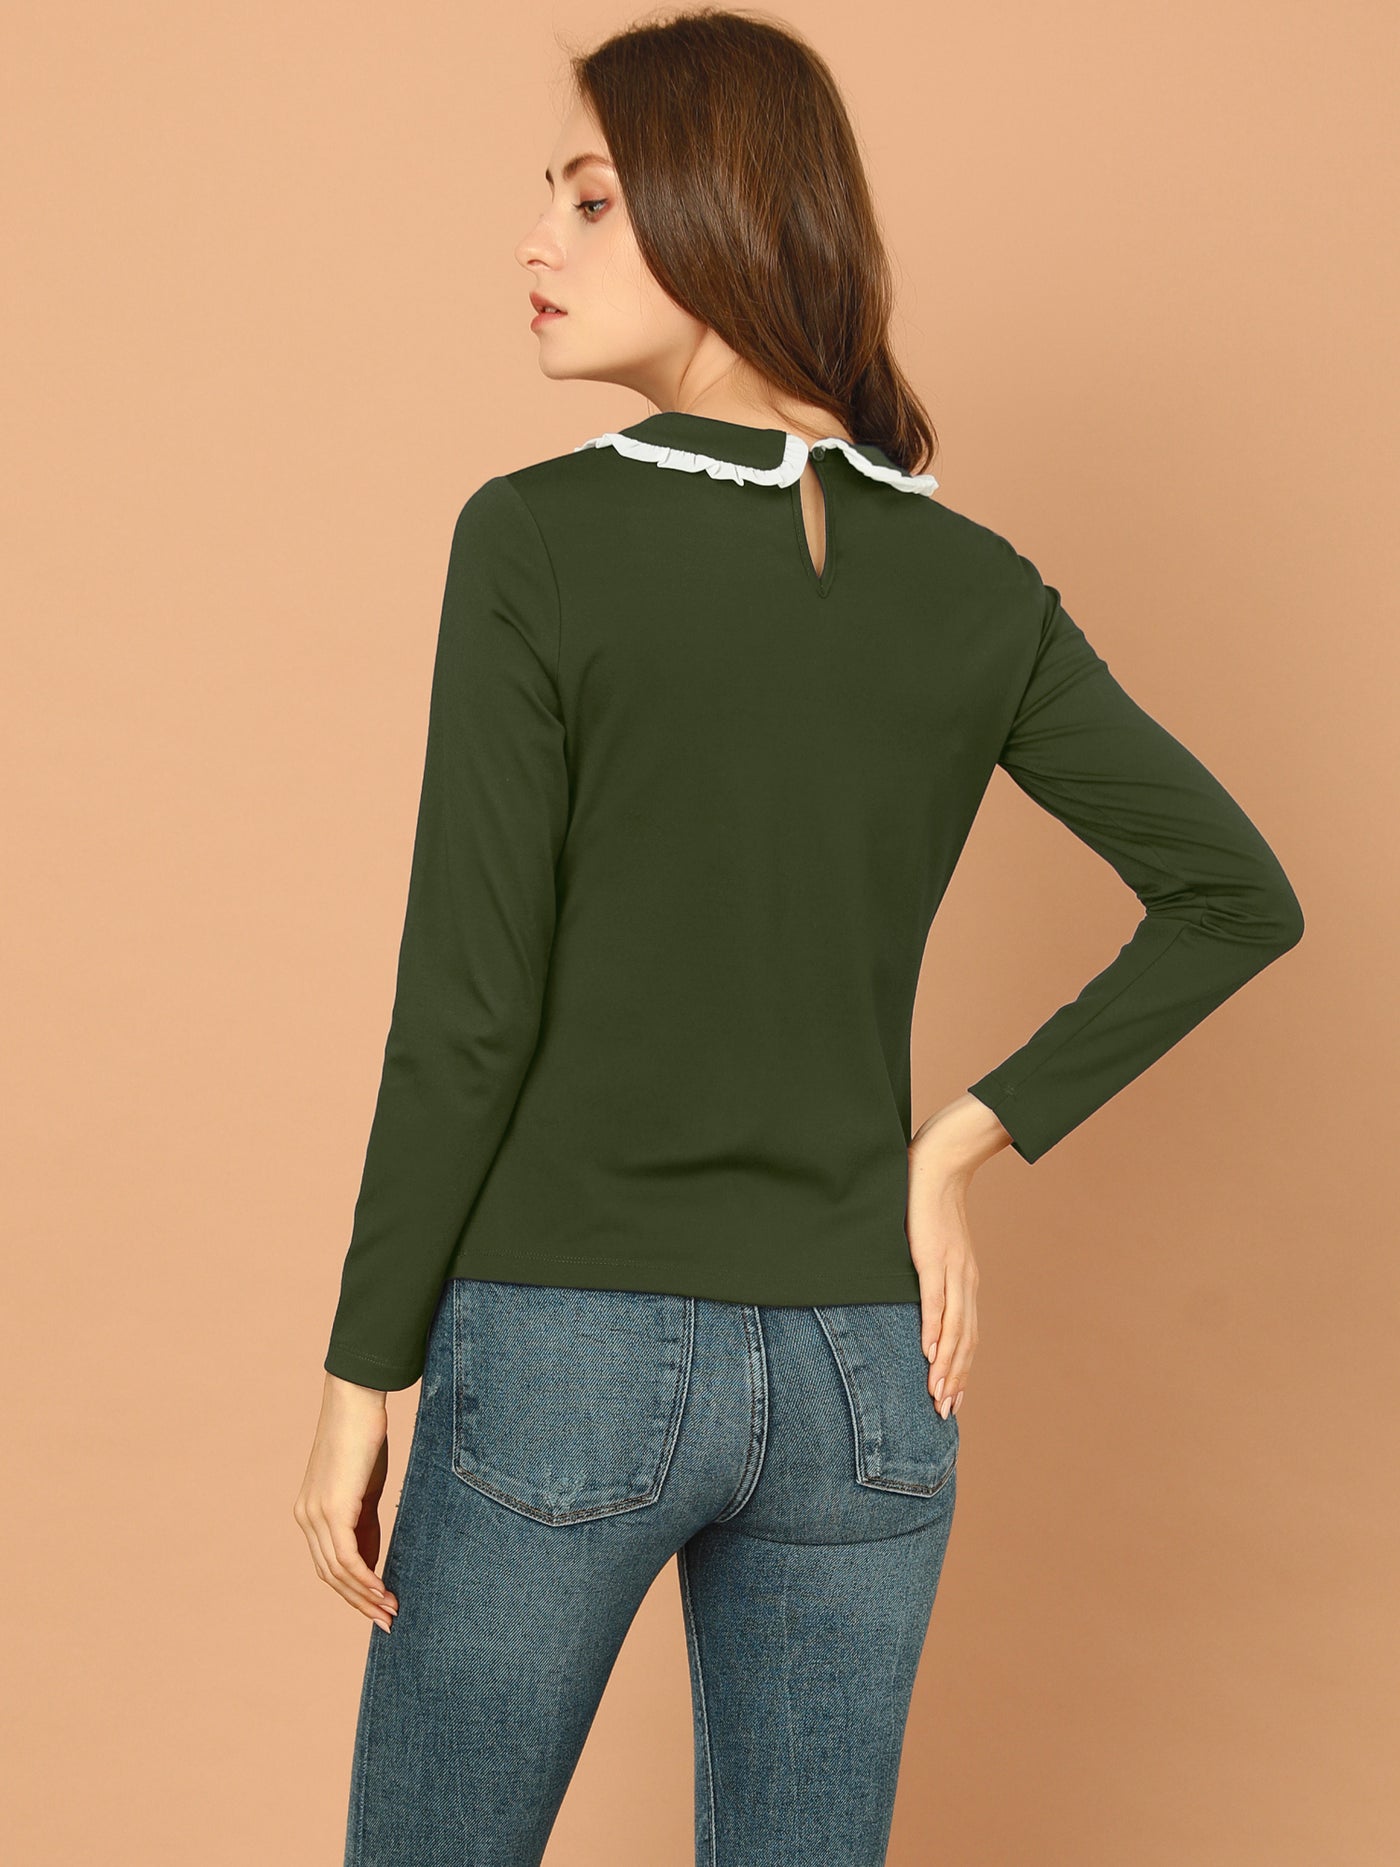 Allegra K Peter Pan Collar Blouse Basic Knit T-Shirt Long Sleeve Shirt